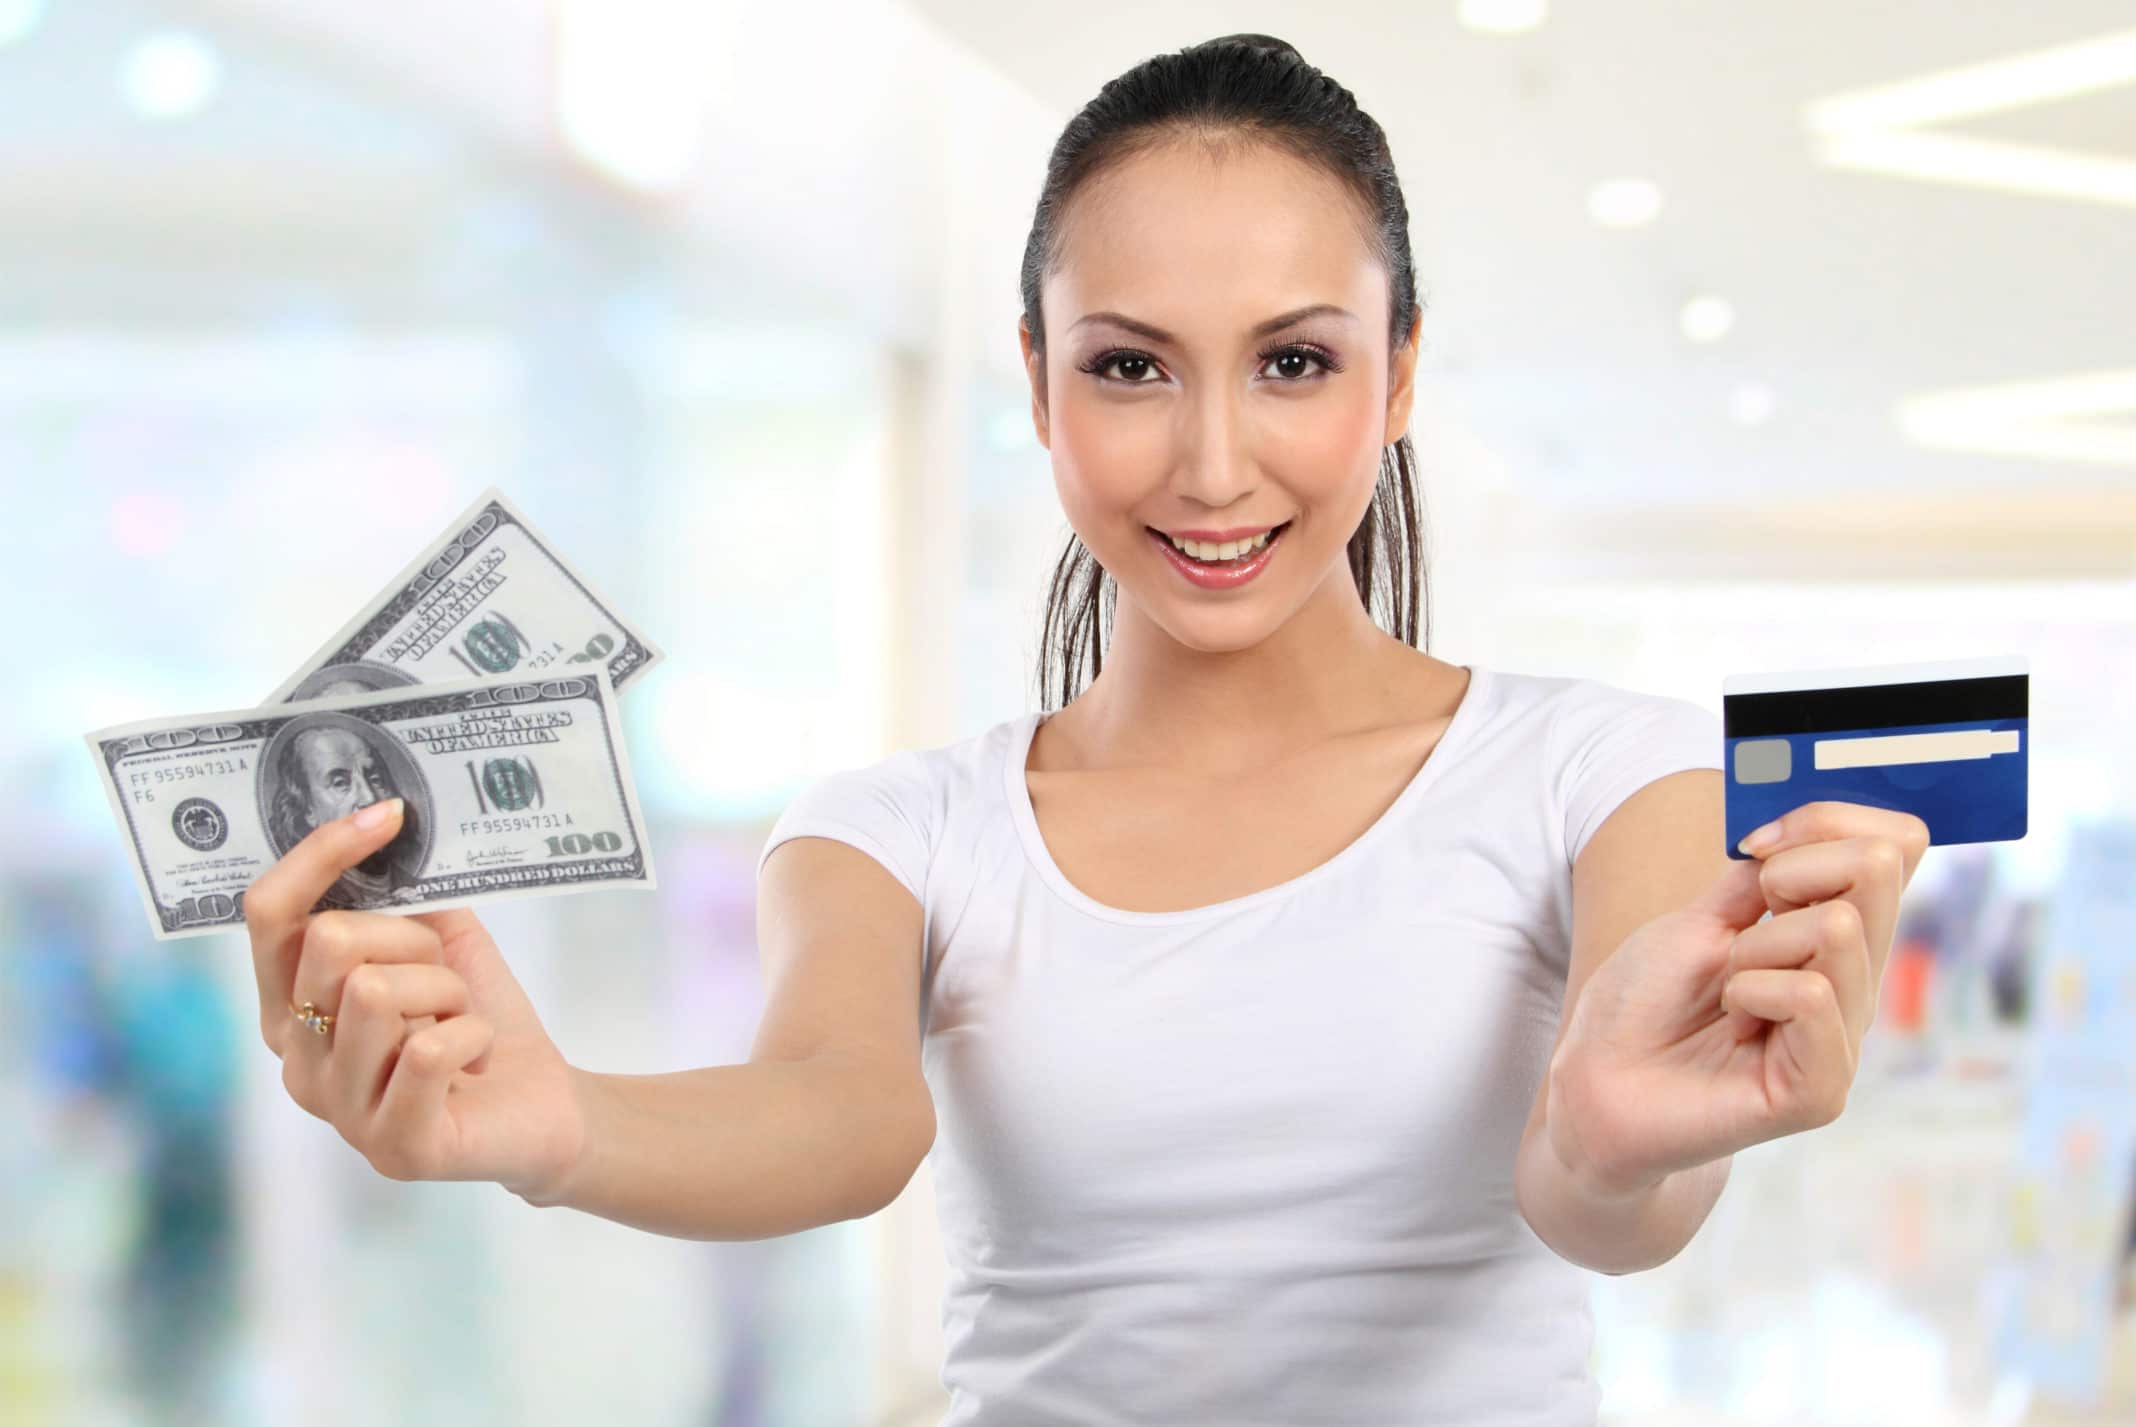 Eliminate Credit Card Debt